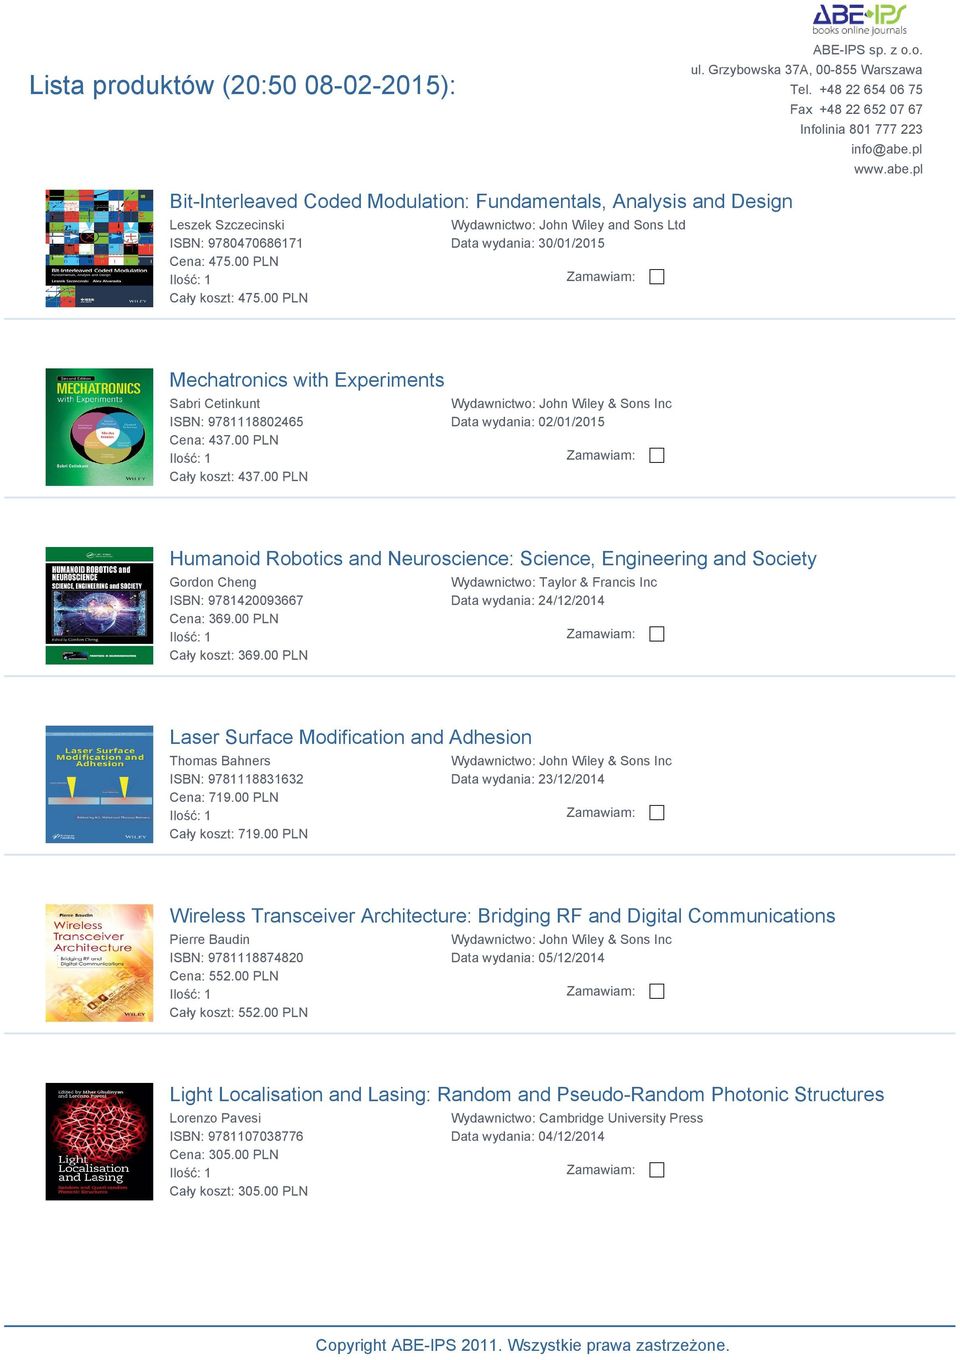 00 PLN Data wydania: 02/01/2015 Humanoid Robotics and Neuroscience: Science, Engineering and Society Gordon Cheng ISBN: 9781420093667 Cena: 369.00 PLN Cały koszt: 369.